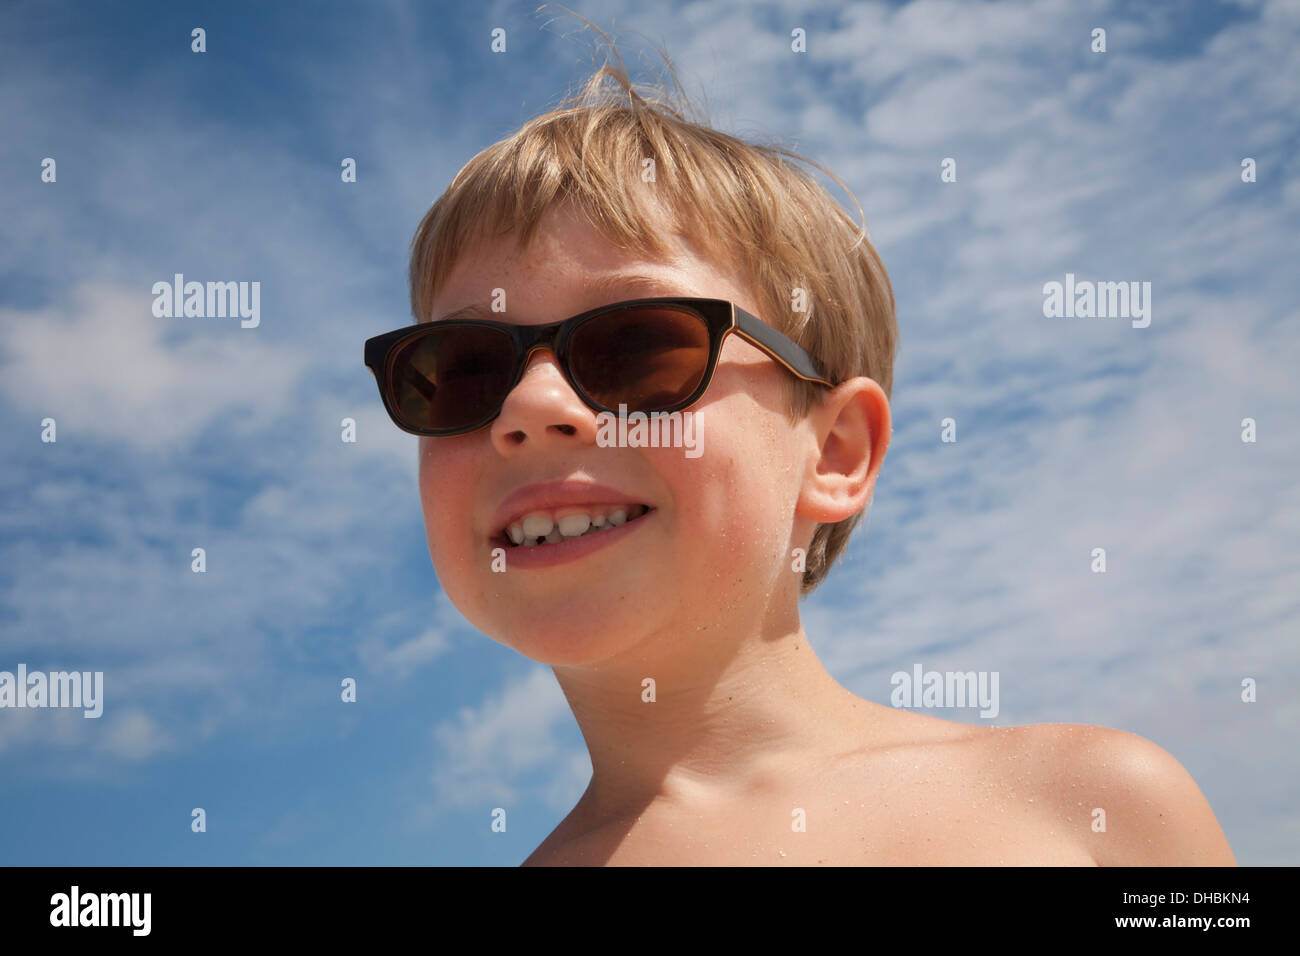 Ein kleiner Junge mit Sonnenbrille. Lächelnd, blauer Himmel. Blonde Haare. Stockfoto